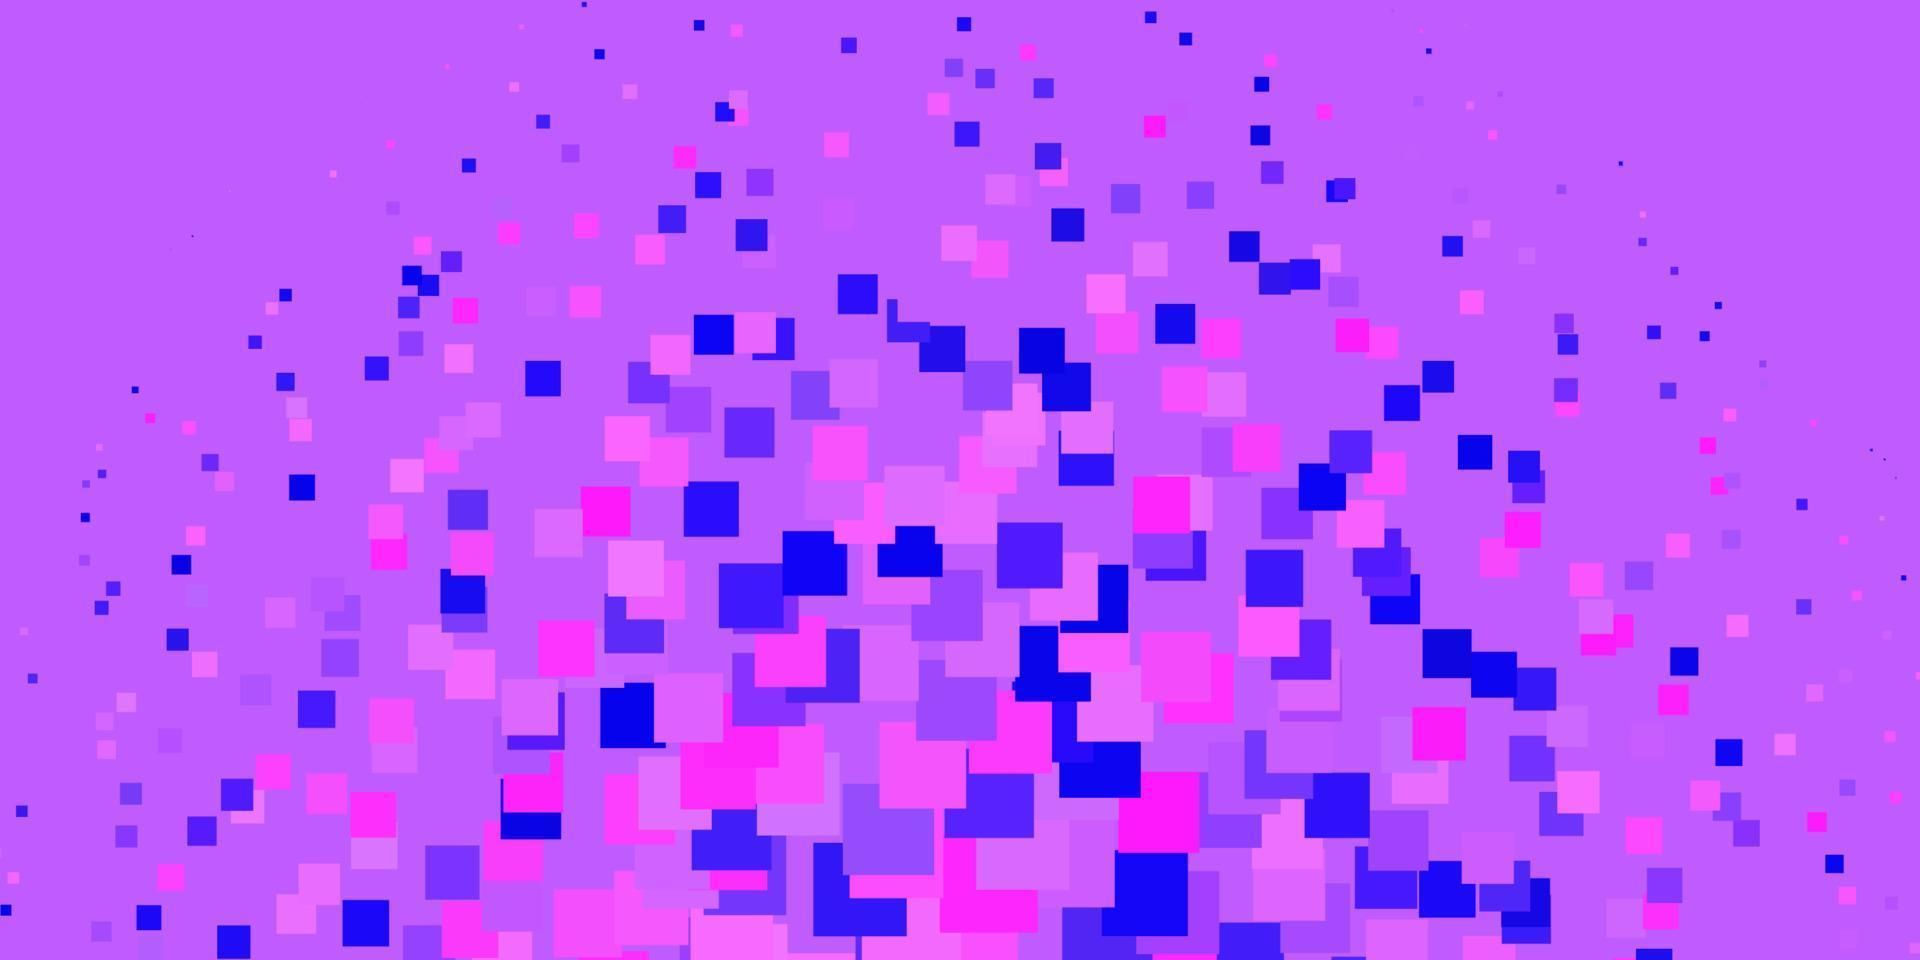 plantilla de vector rosa claro, azul en rectángulos.